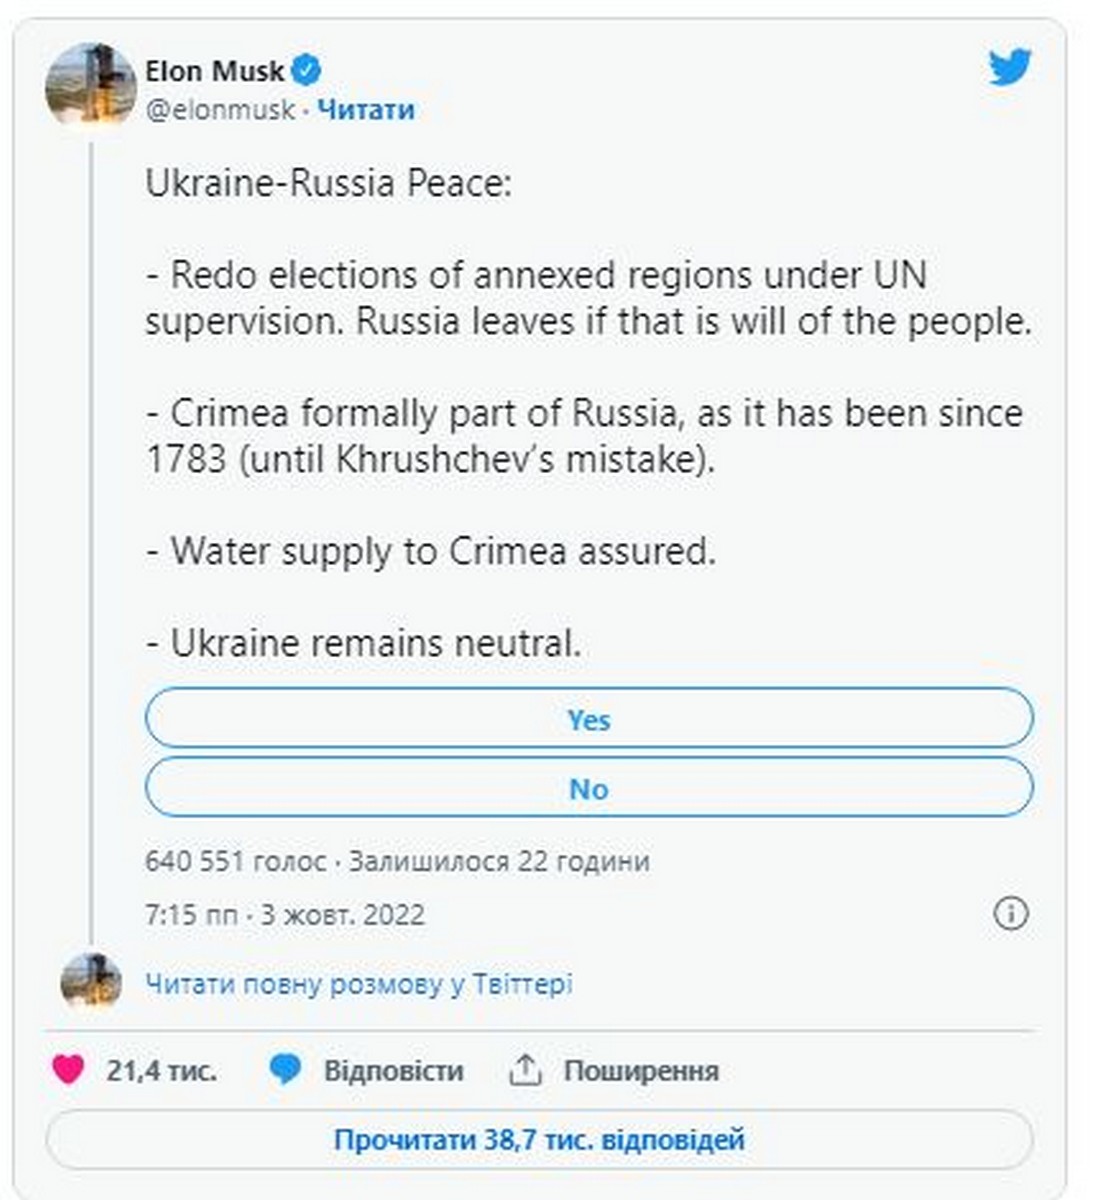 Ілон Маск запропонував віддати Крим росії - акції Tesla одразу рухнули